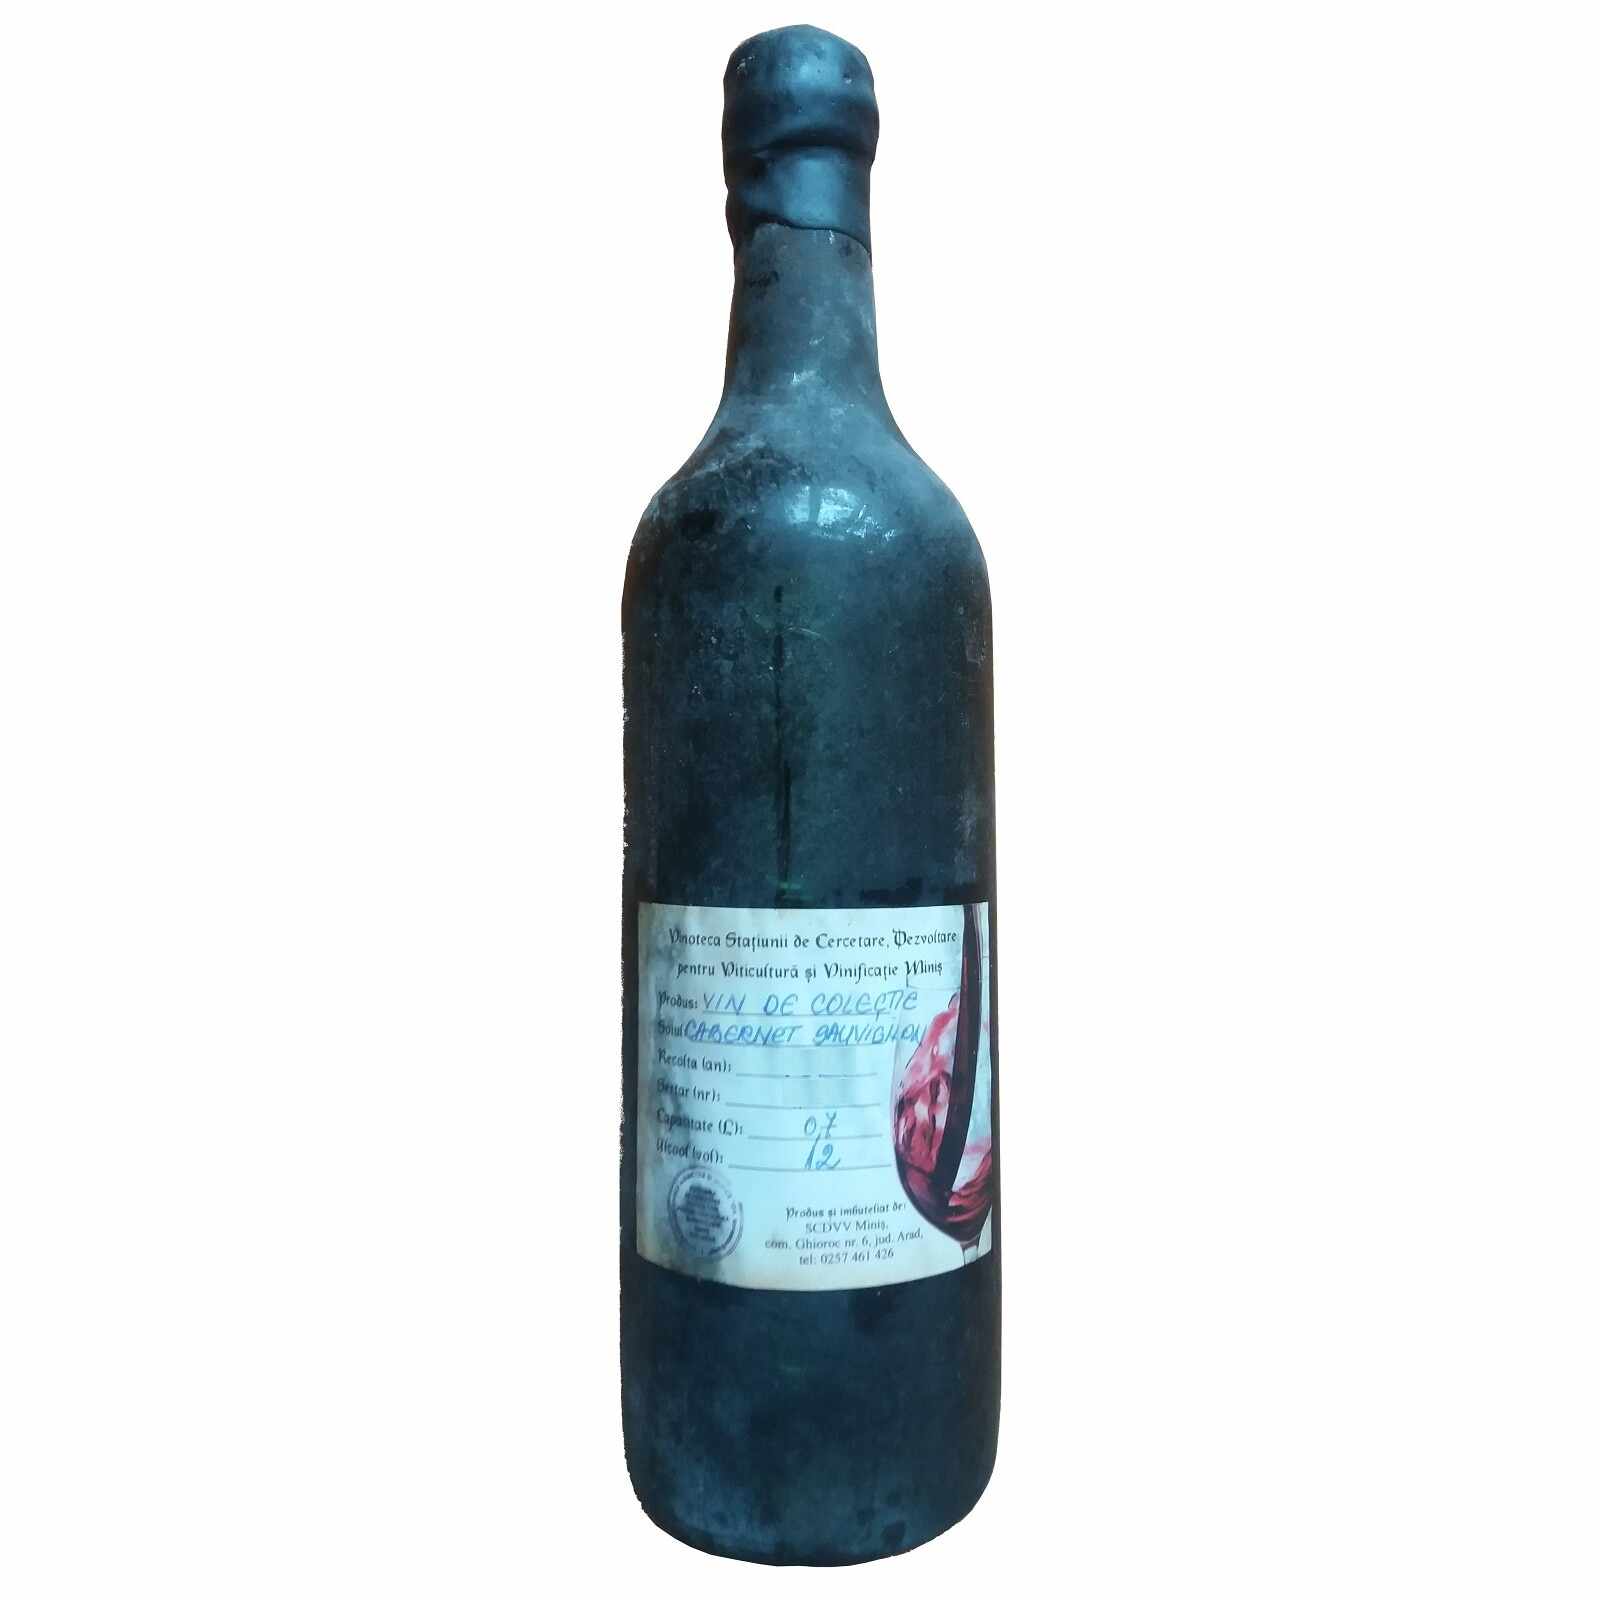 Vin de colectie Minis Cabernet Sauvignon 1988 rosu, in cutie lemn, 0.7L